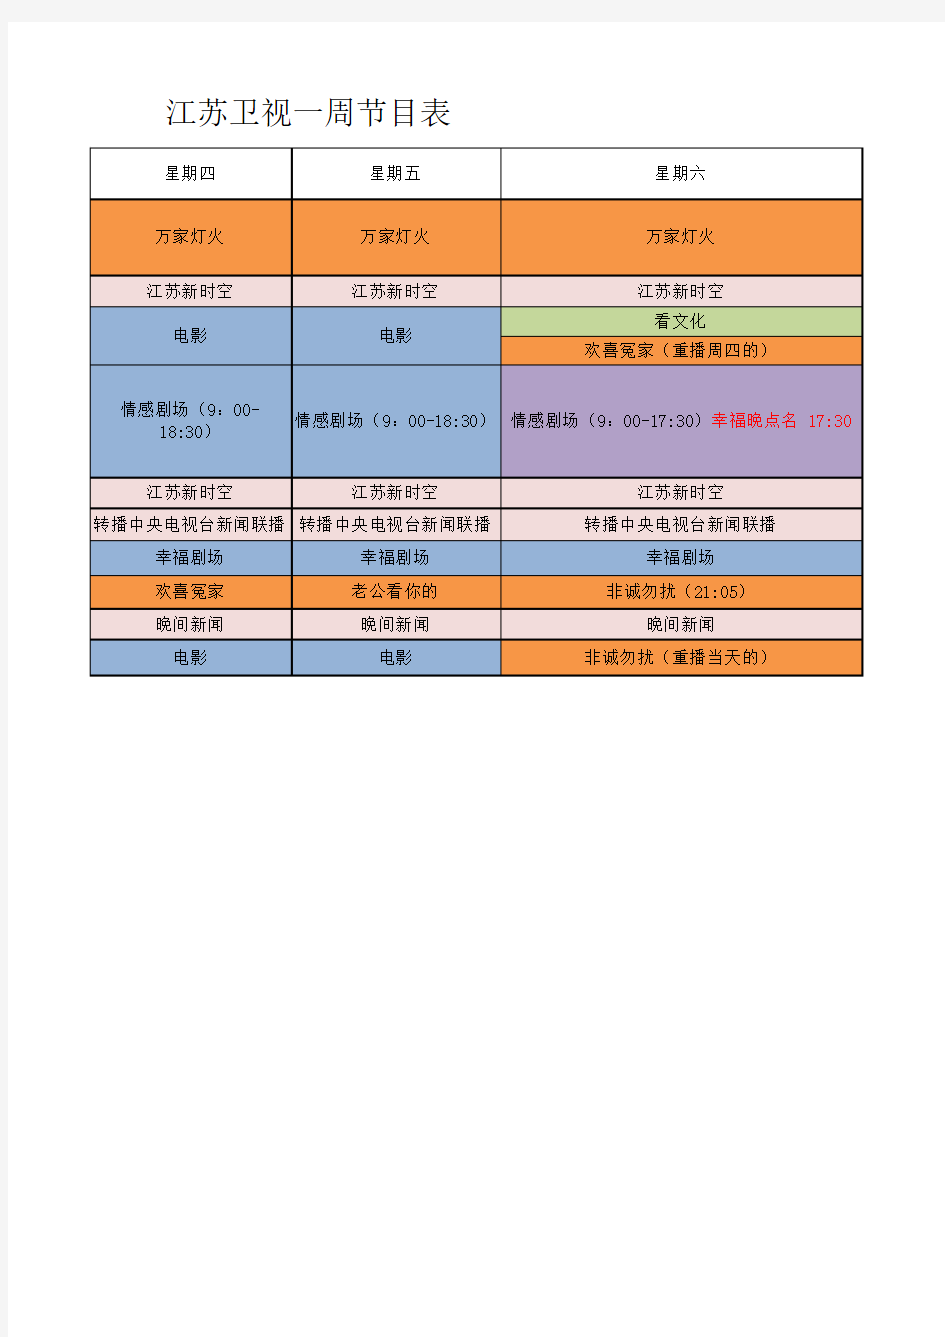 江苏卫视时间节目时间表